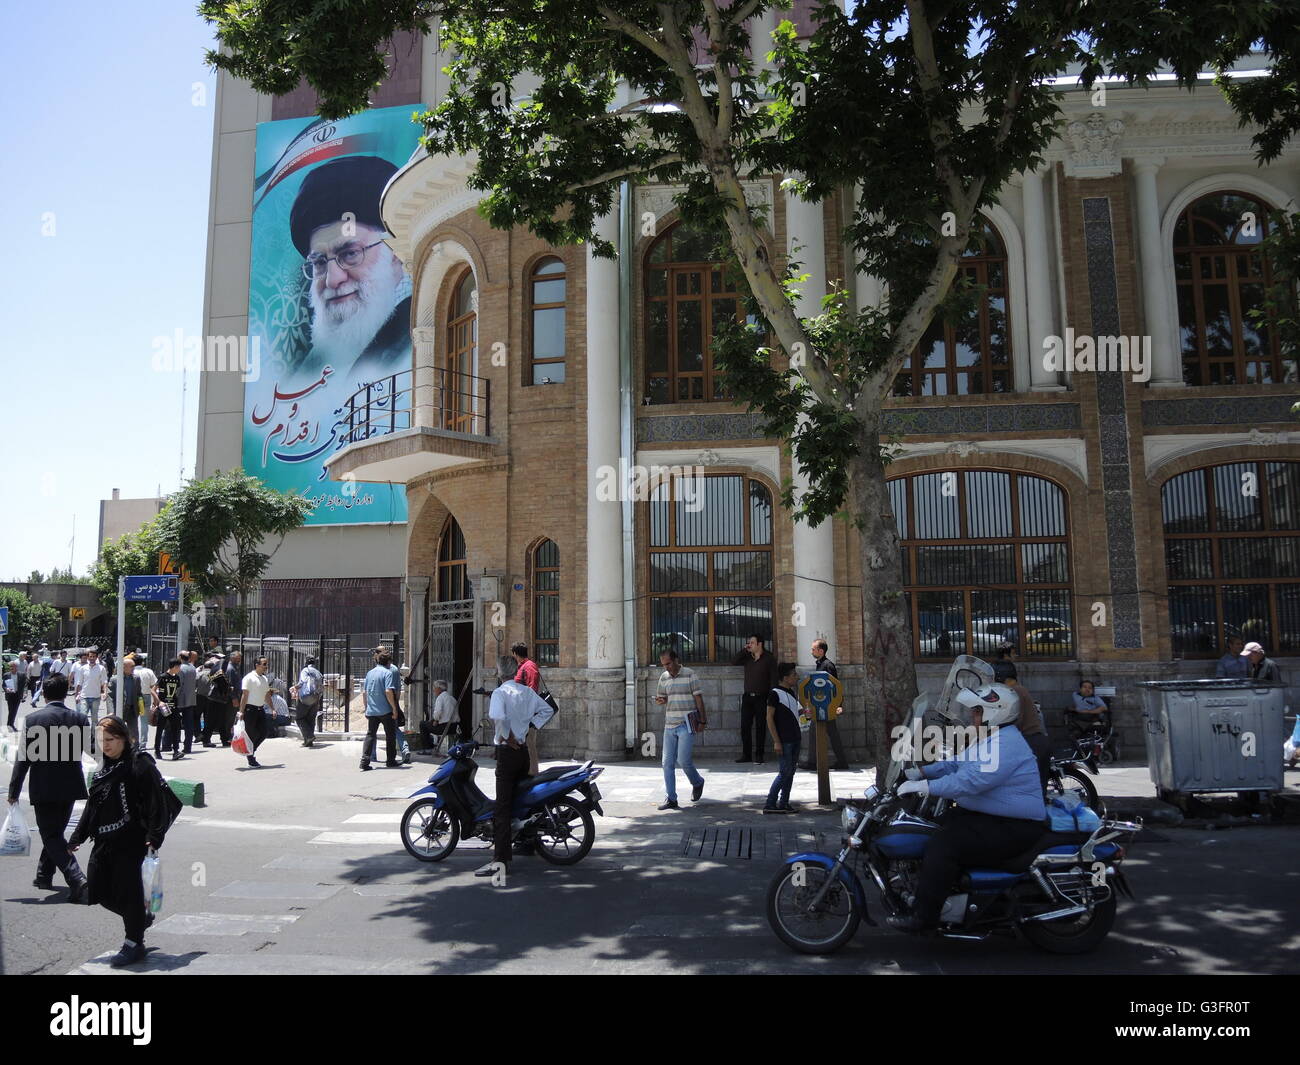 Un ritratto di Ali Chamenei, leader supremo dell'Iran dal 1989, che ha l'ultima parola in tutte le questioni strategiche ed è de facto il capo dello Stato in base alla costituzione, è dipinto sul muro di una casa a Teheran, Iran, 28 maggio 2016. Foto: Joerg Schurig/dpa Foto Stock